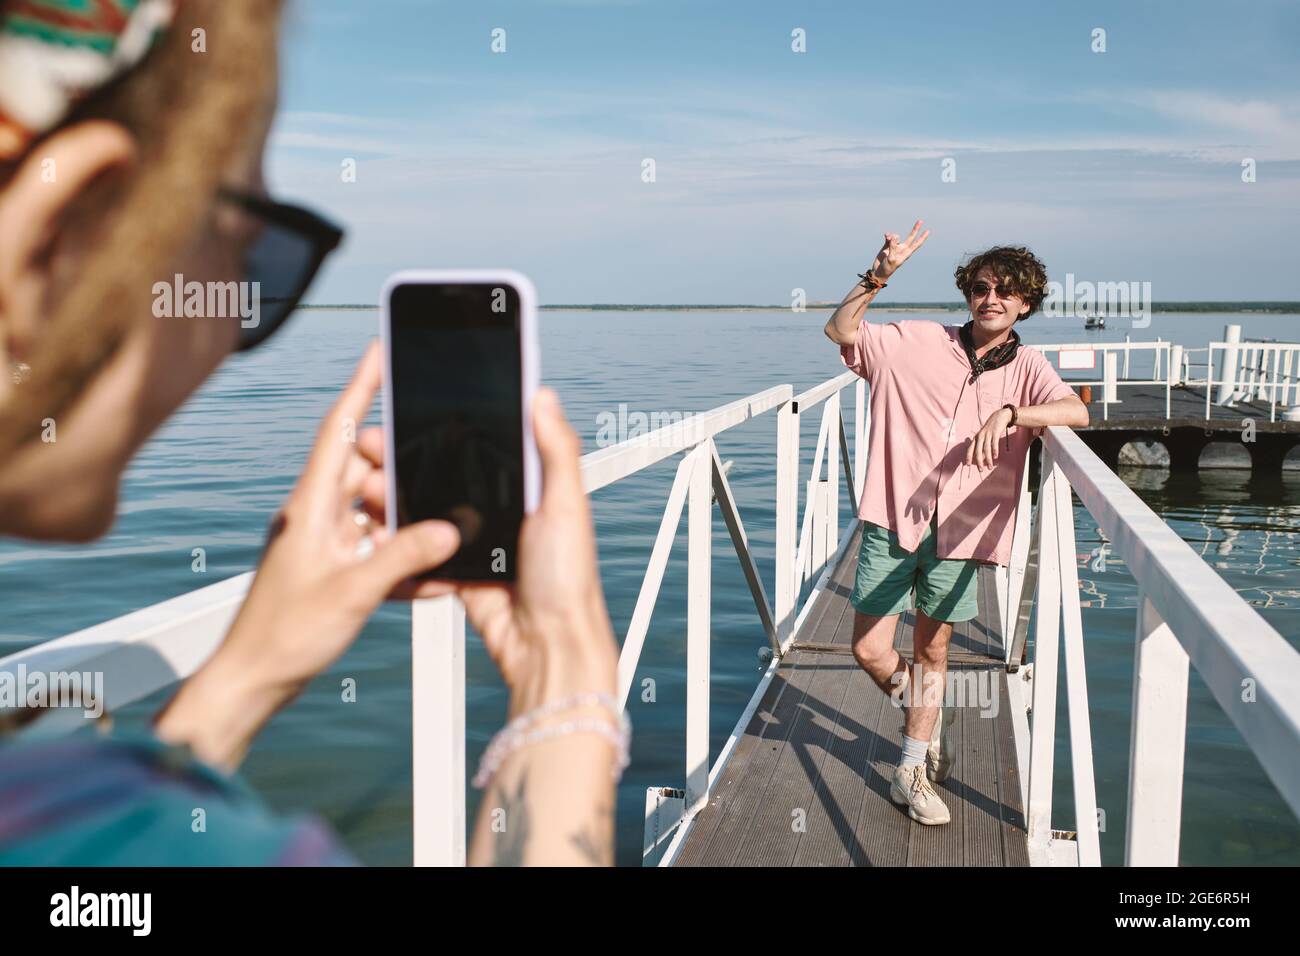 Un jeune homme souriant en chemise rose fait un geste de paix lorsque sa petite amie le photographie sur un smartphone au bord du lac Banque D'Images